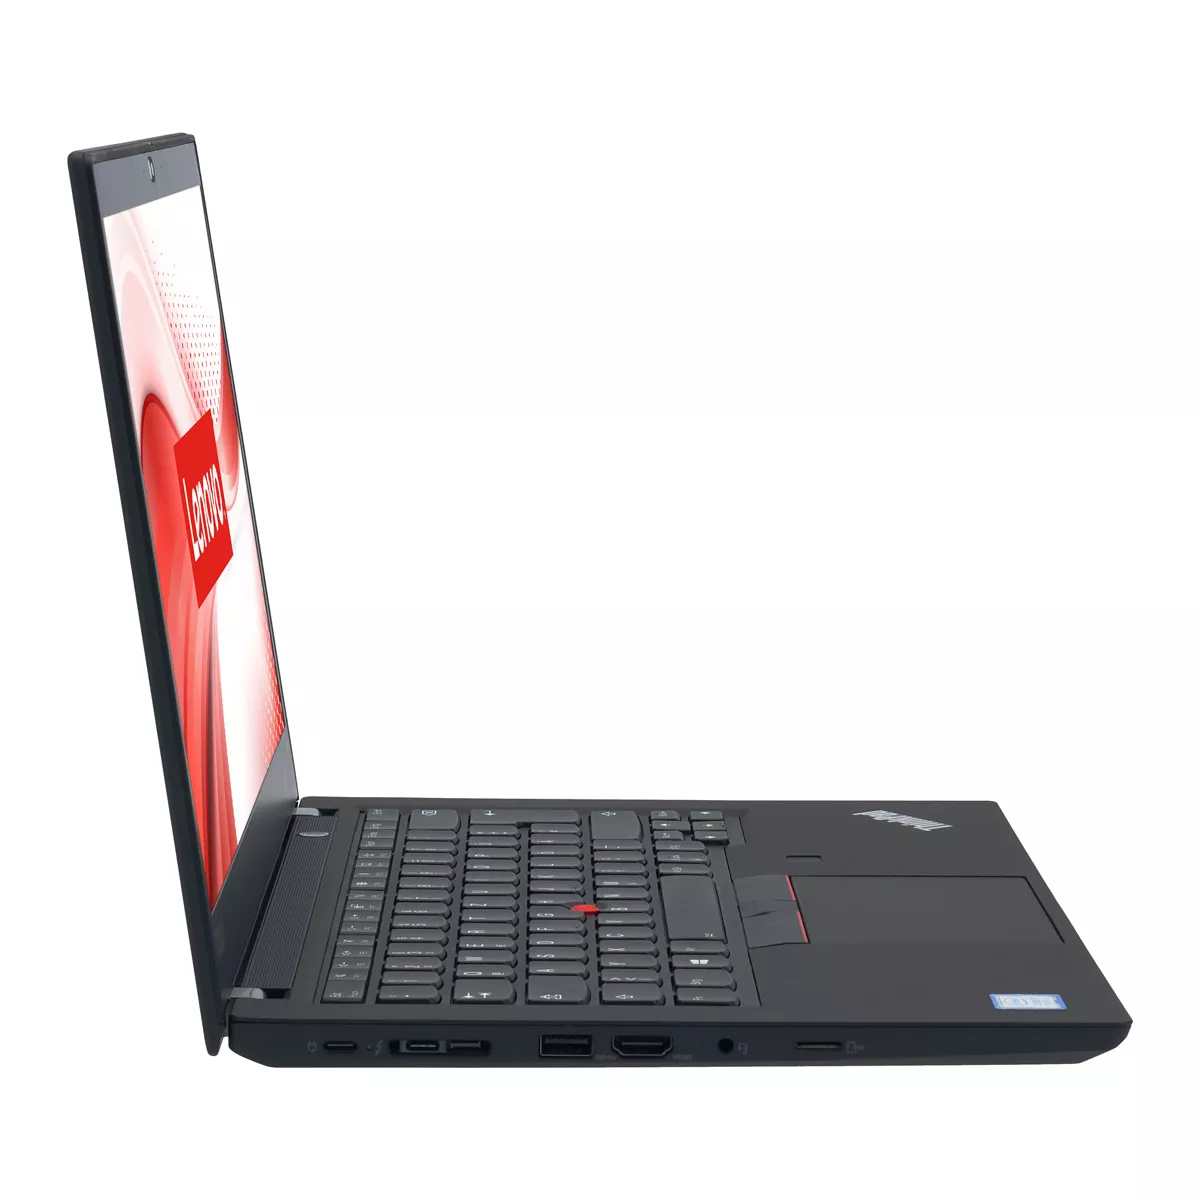 Lenovo ThinkPad T490 Core i5 8265U 8 GB 240 GB M.2 nVME SSD Webcam A